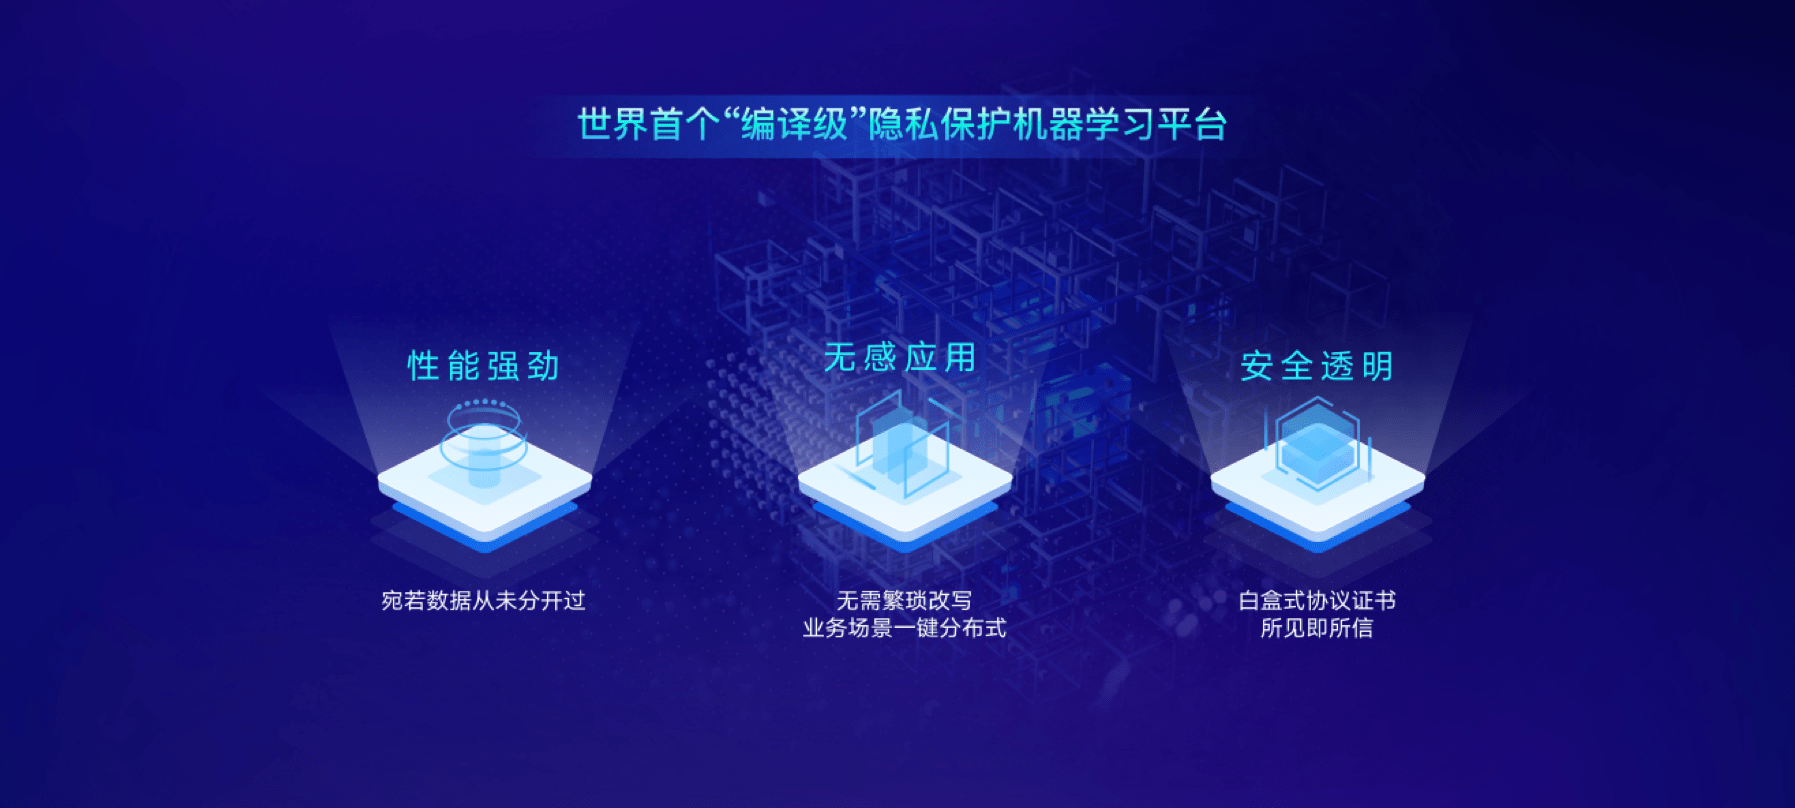 RealAI|清华系AI公司瑞莱智慧发布首个企业级隐私保护机器学习平台